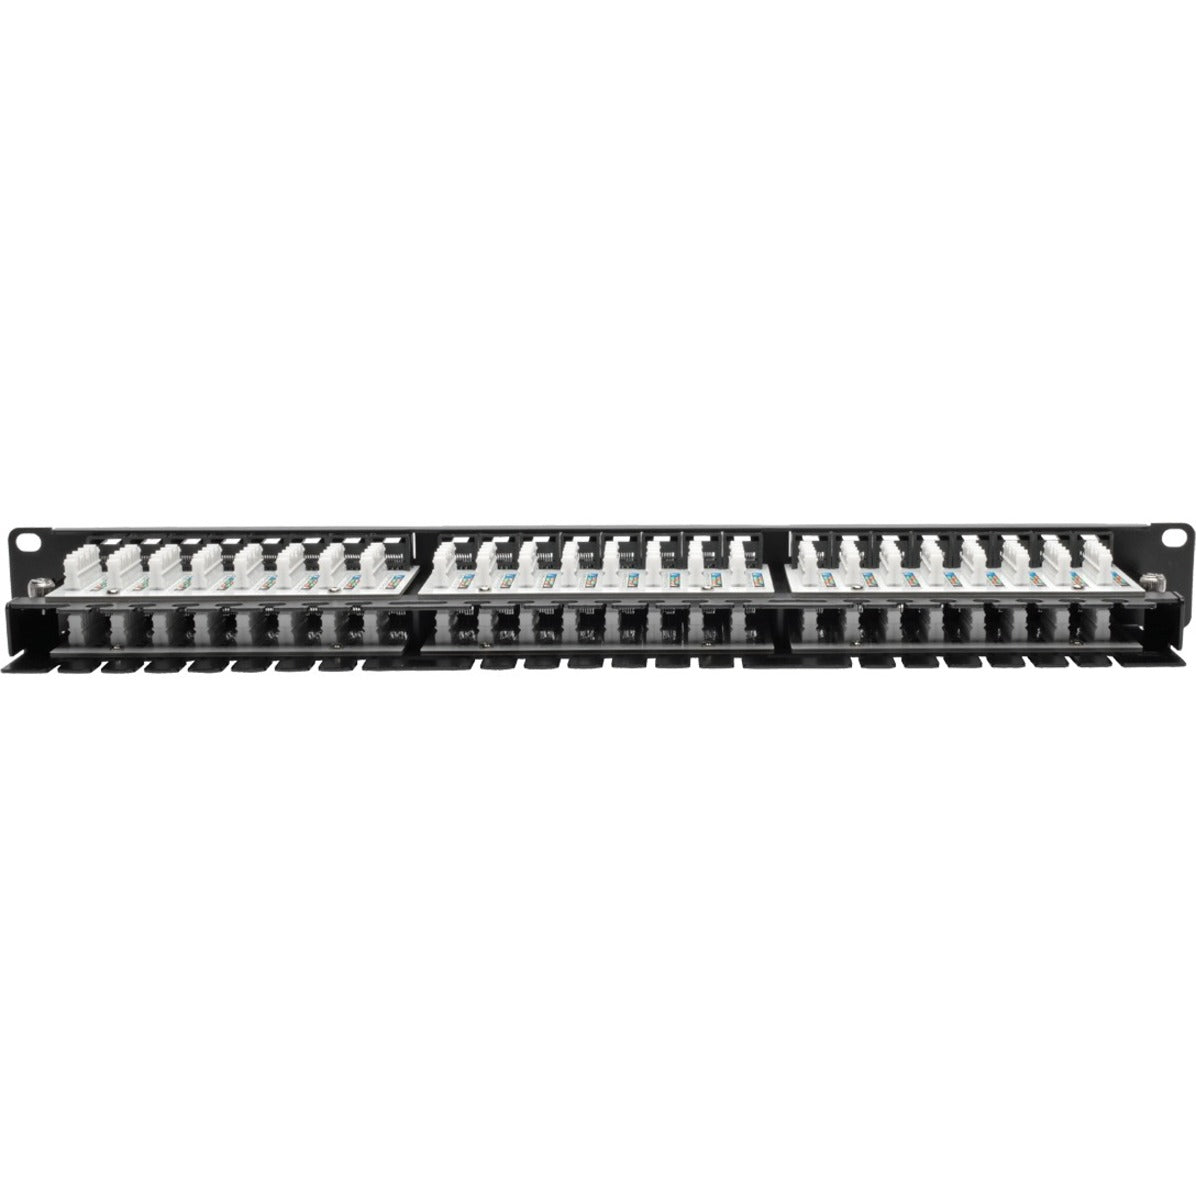 Tripp Lite N052-048-1U 48-Port 1U Rack-Mount High-Density Patch Panel, TAA Compliant, Lifetime Warranty